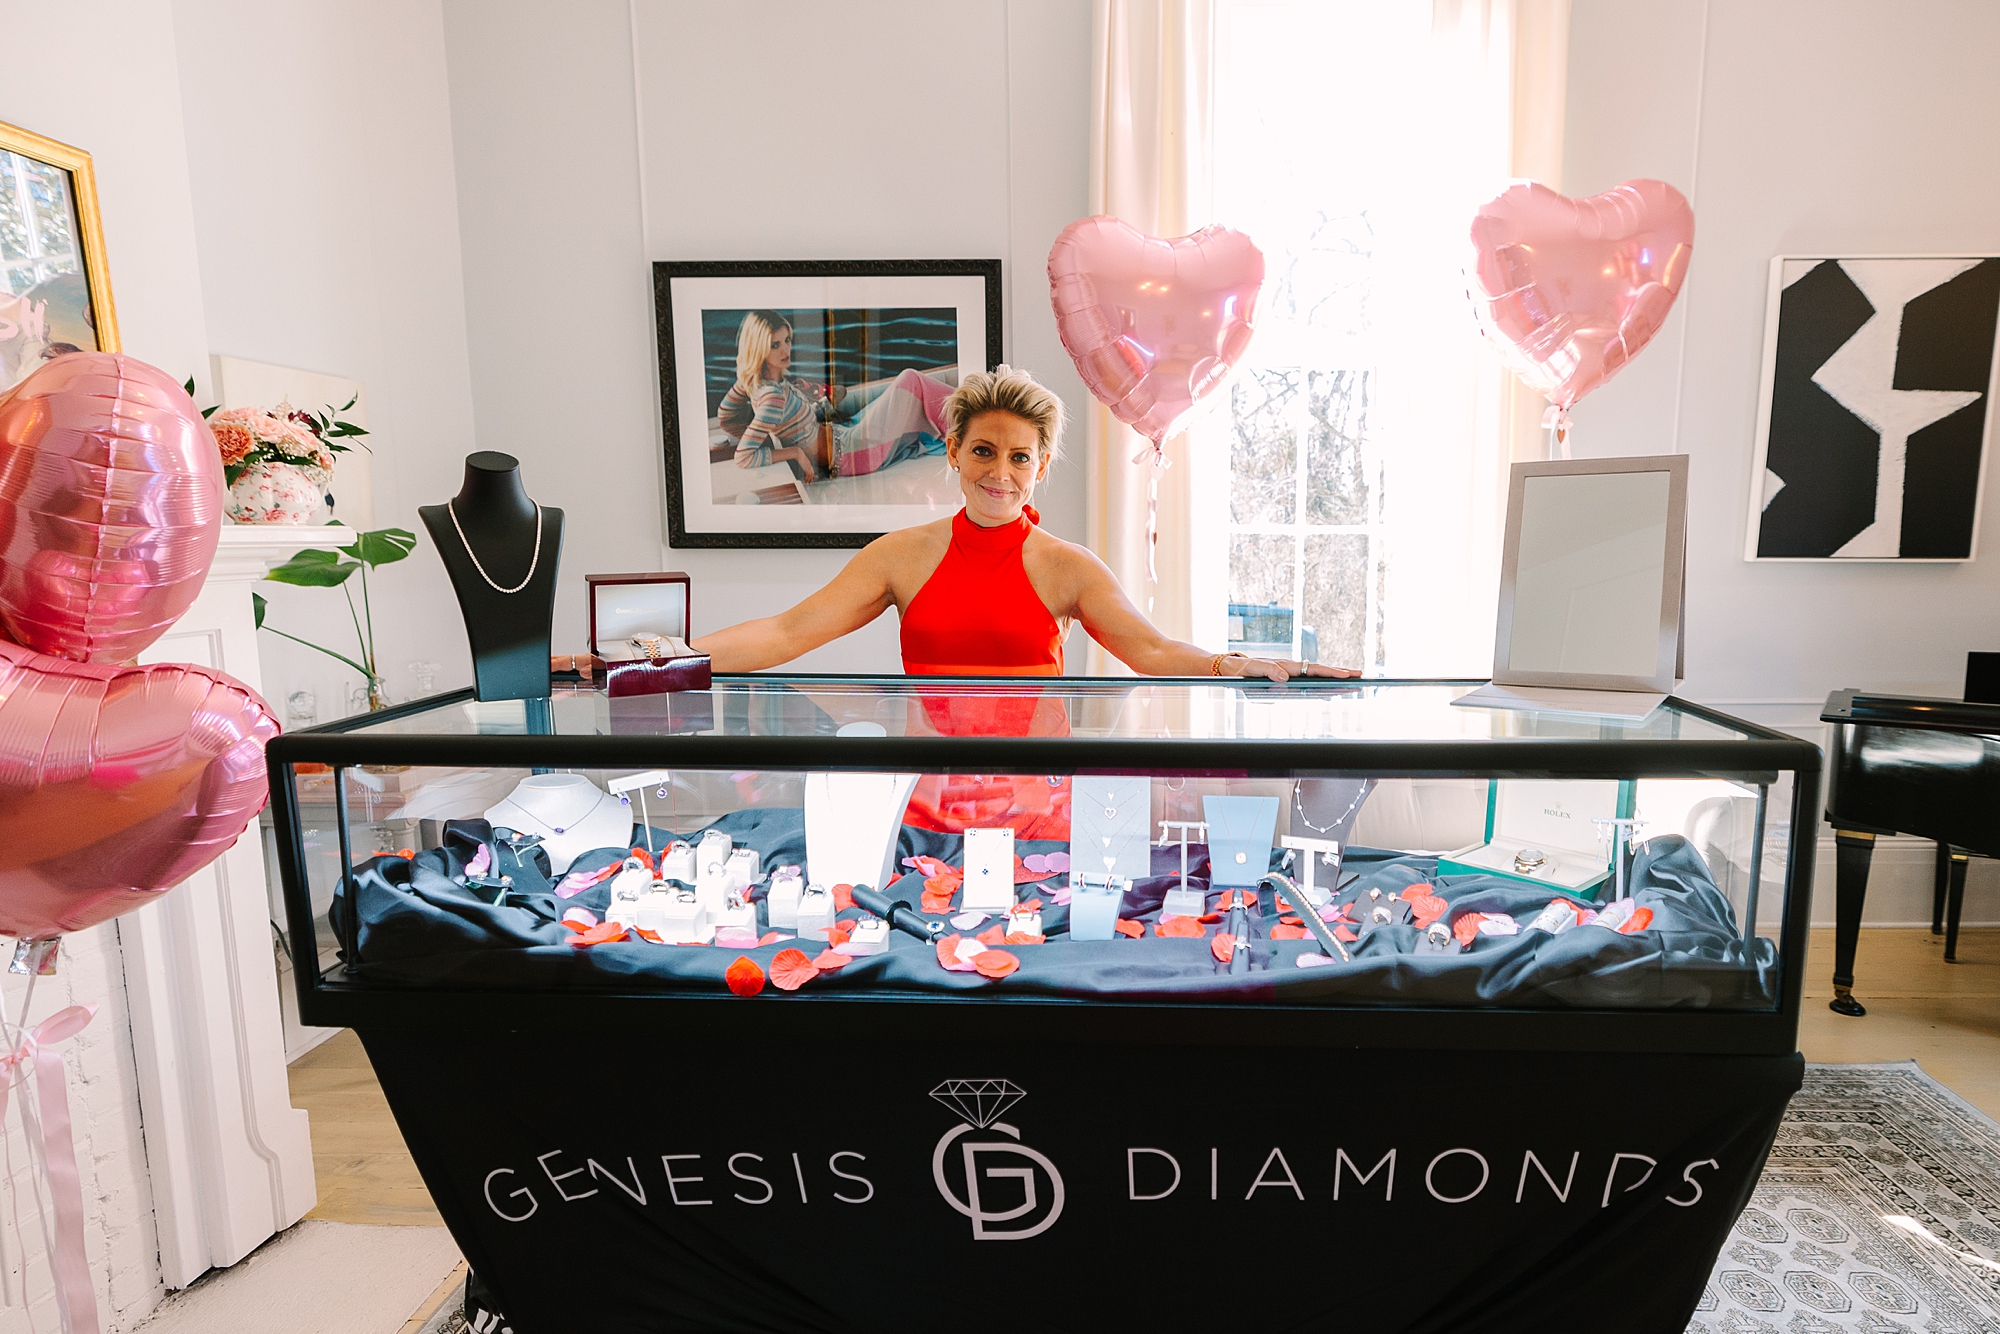 woman in red dress poses behind Genesis Diamond display